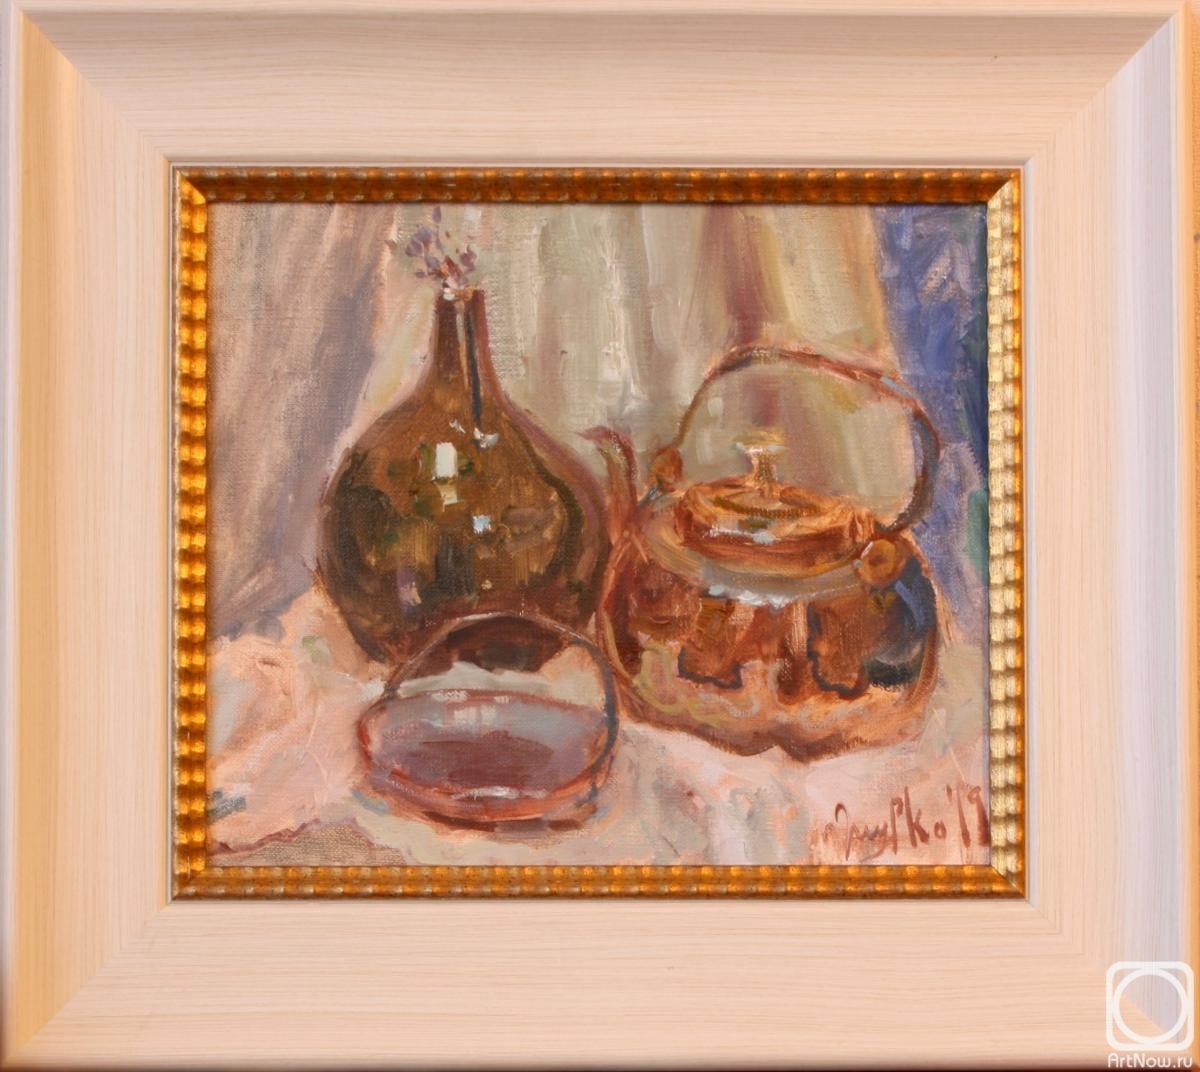 Zhmurko Anton. Still life with copper kettle